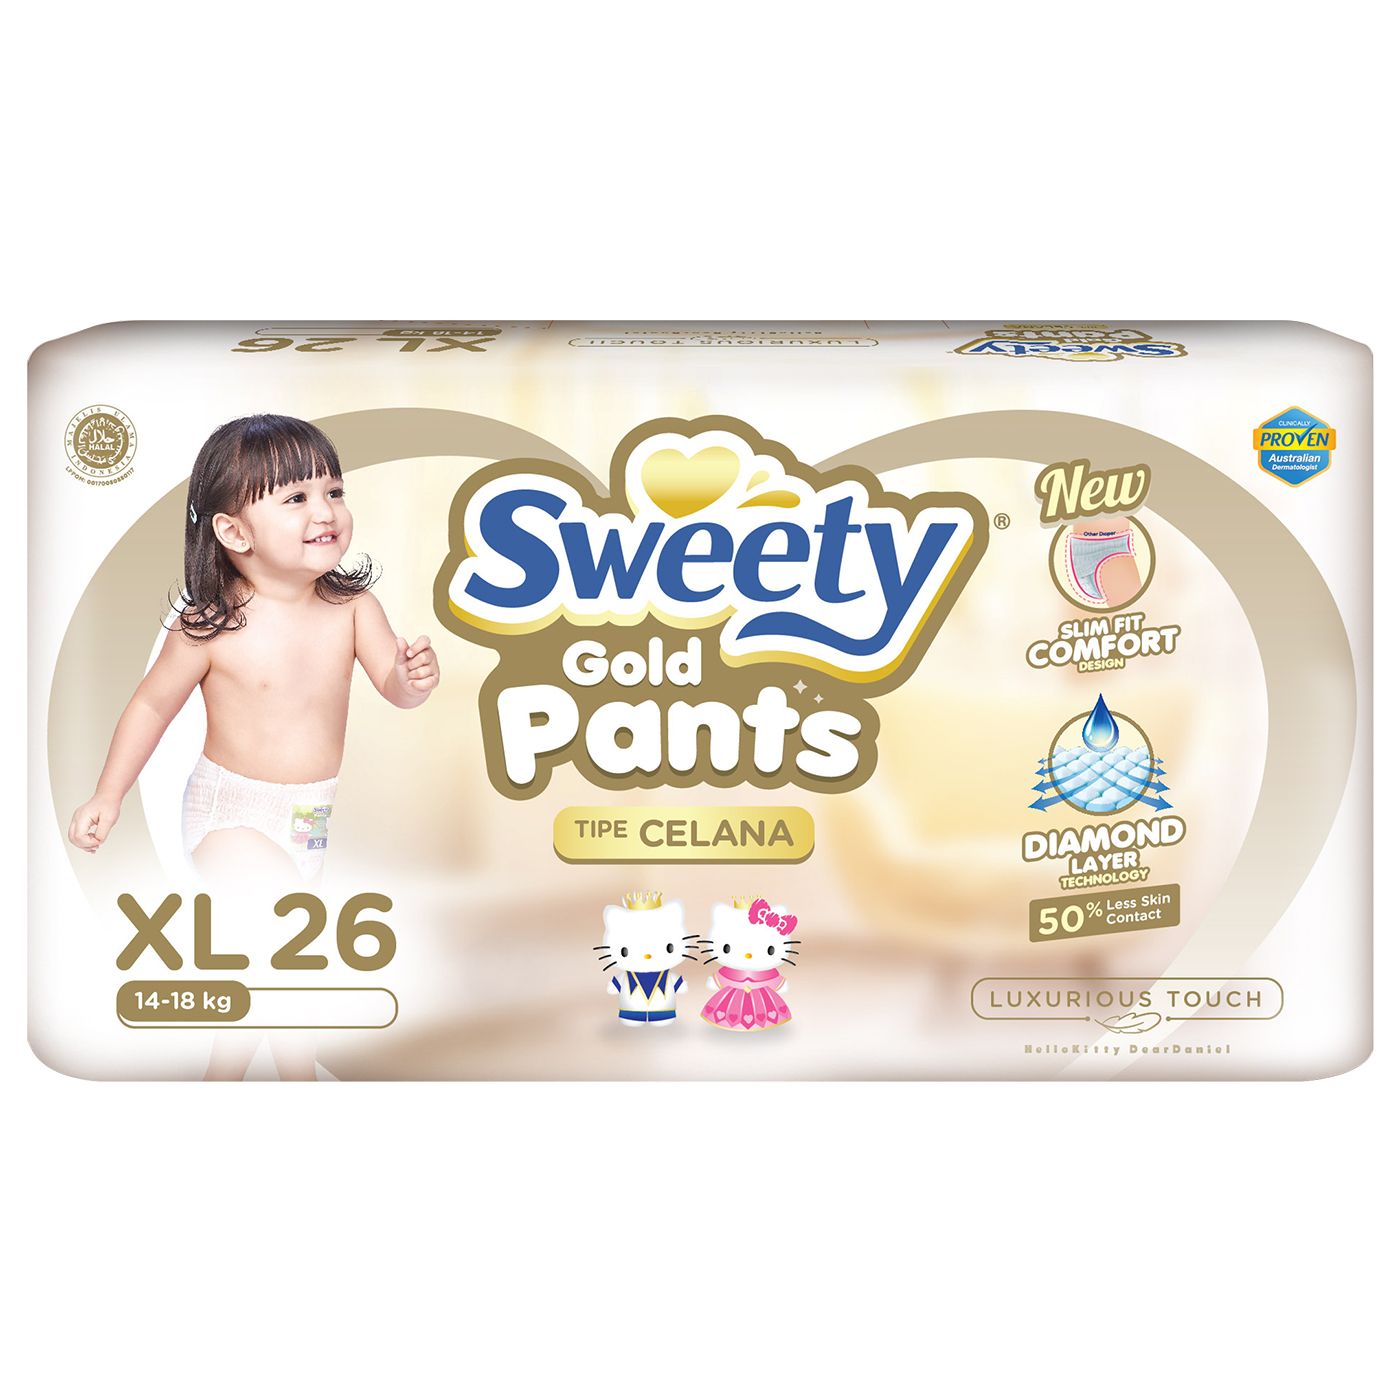 Sweety Pantz Gold Regular Pack XL 26 - 3